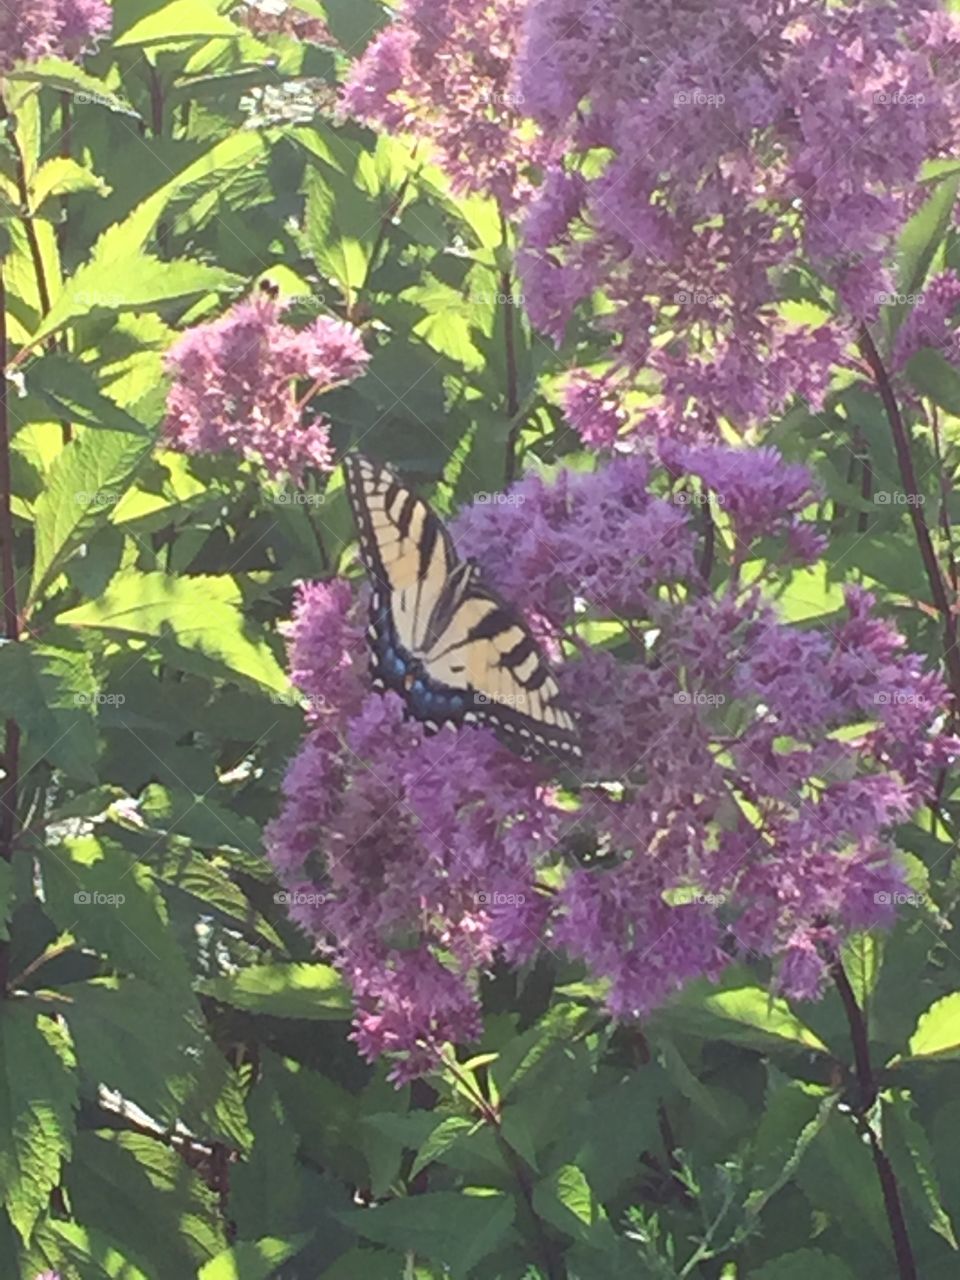 Butterfly on purple flowers